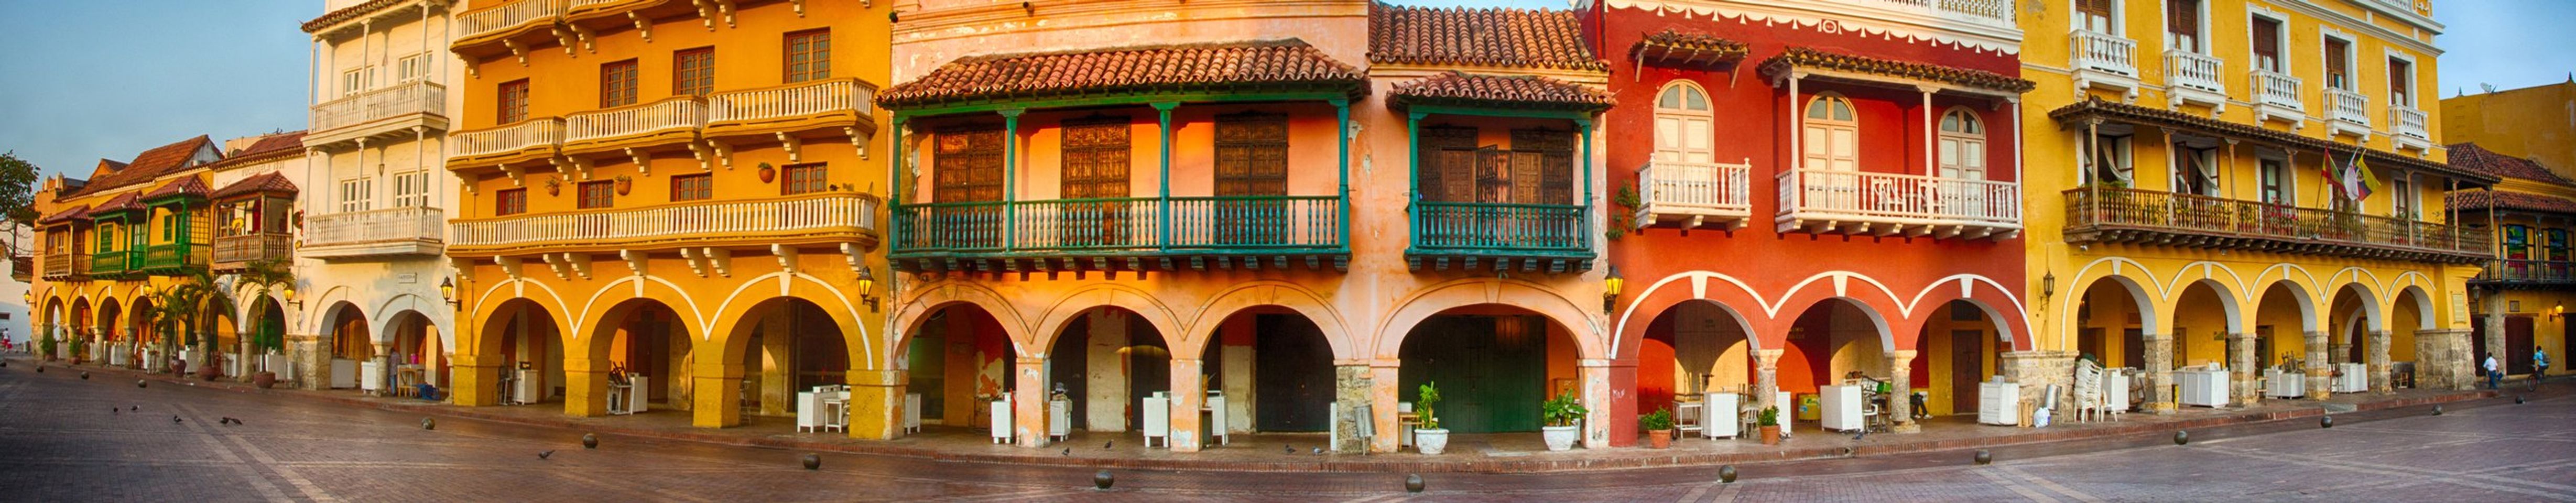 Entdecken Sie die versteckten Schätze von Cartagena vor Ihrer Reise.